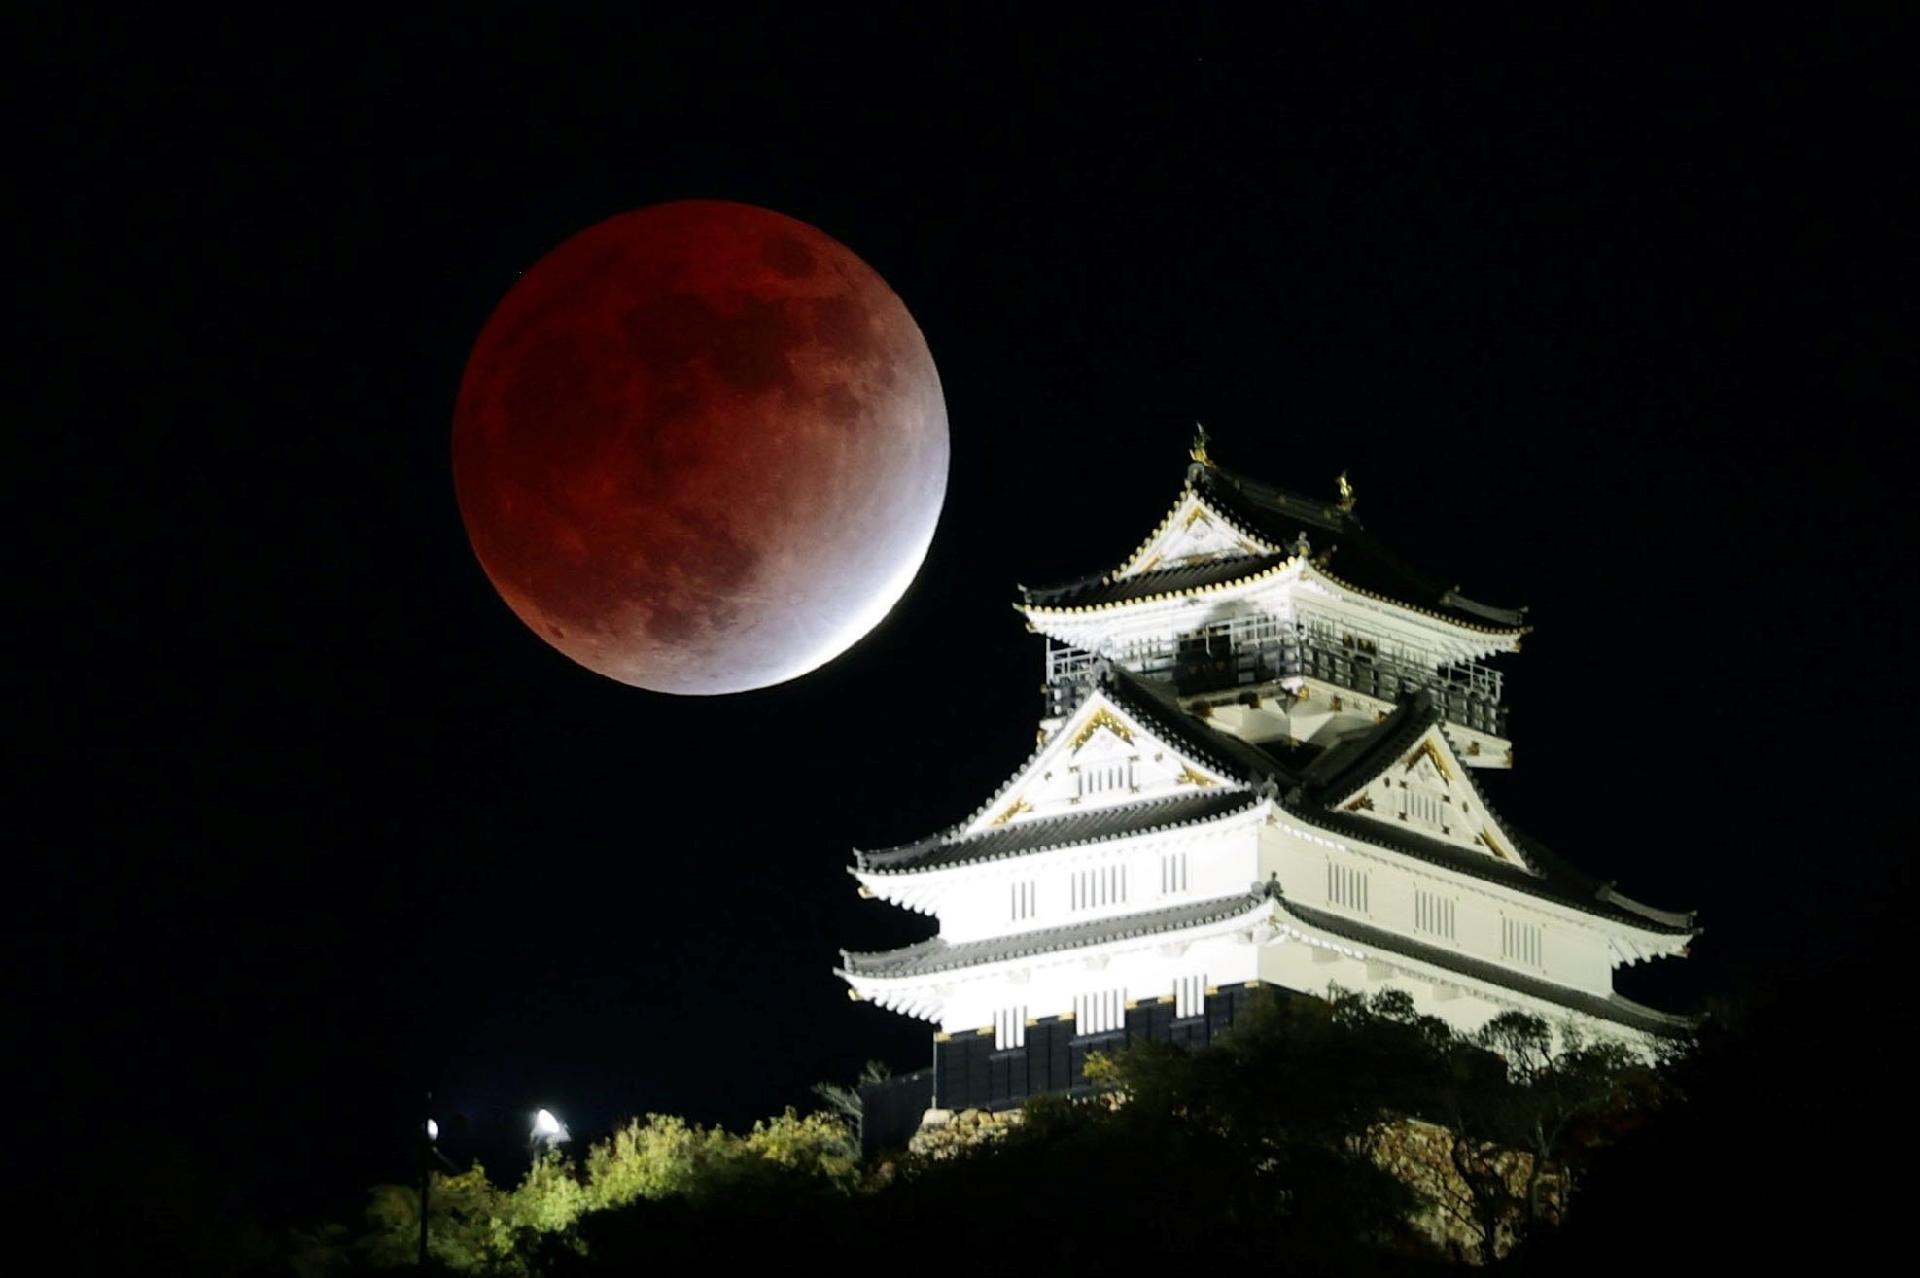 Eclipse lunar parcial observado en el castillo de Gifu, centro de Japón - Kyodo / via Reuters